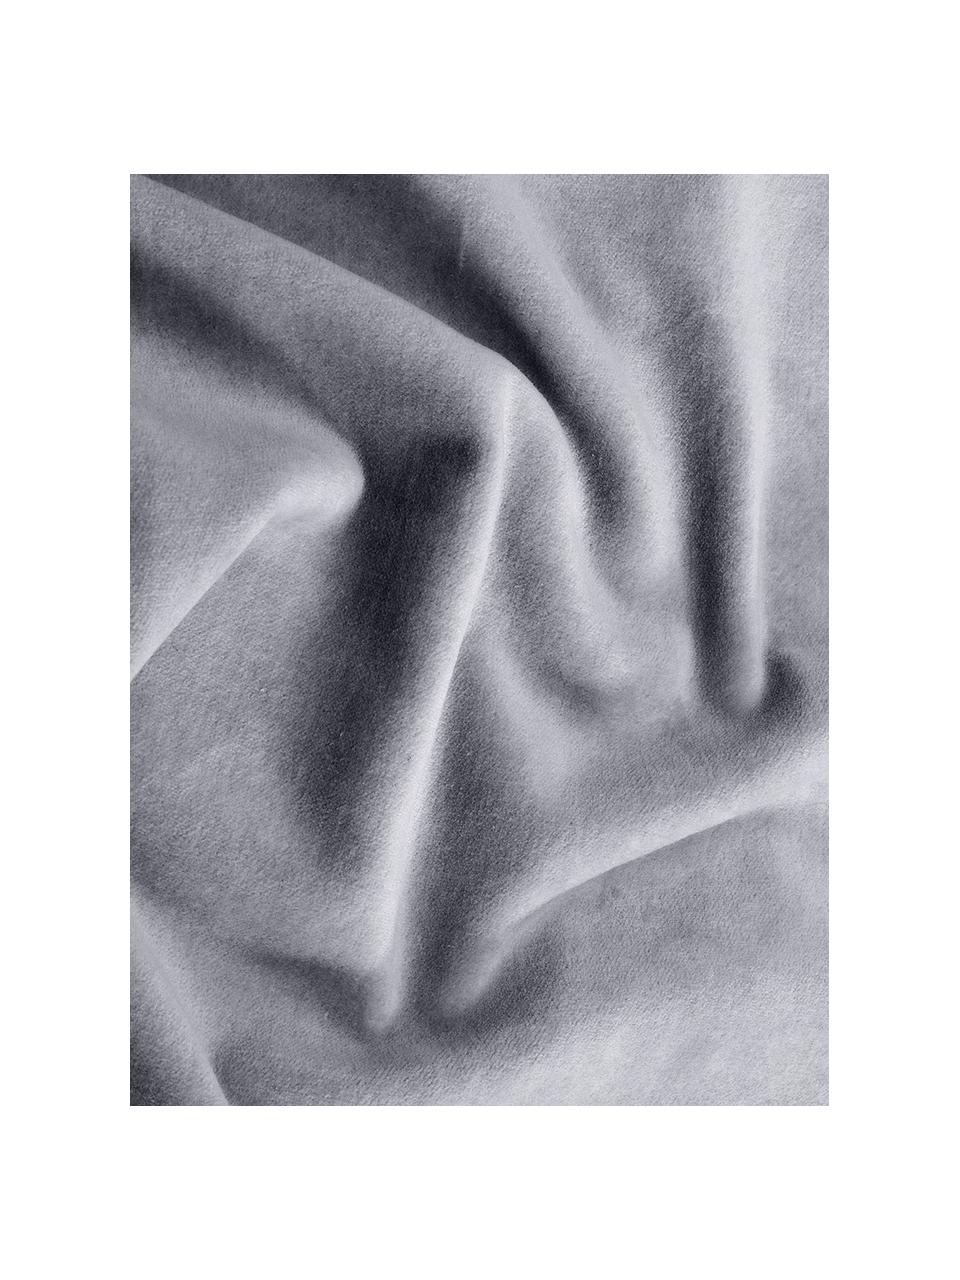 Effen fluwelen kussenhoes Dana in grijs, 100% katoenfluweel, Grijs, B 30 x L 50 cm